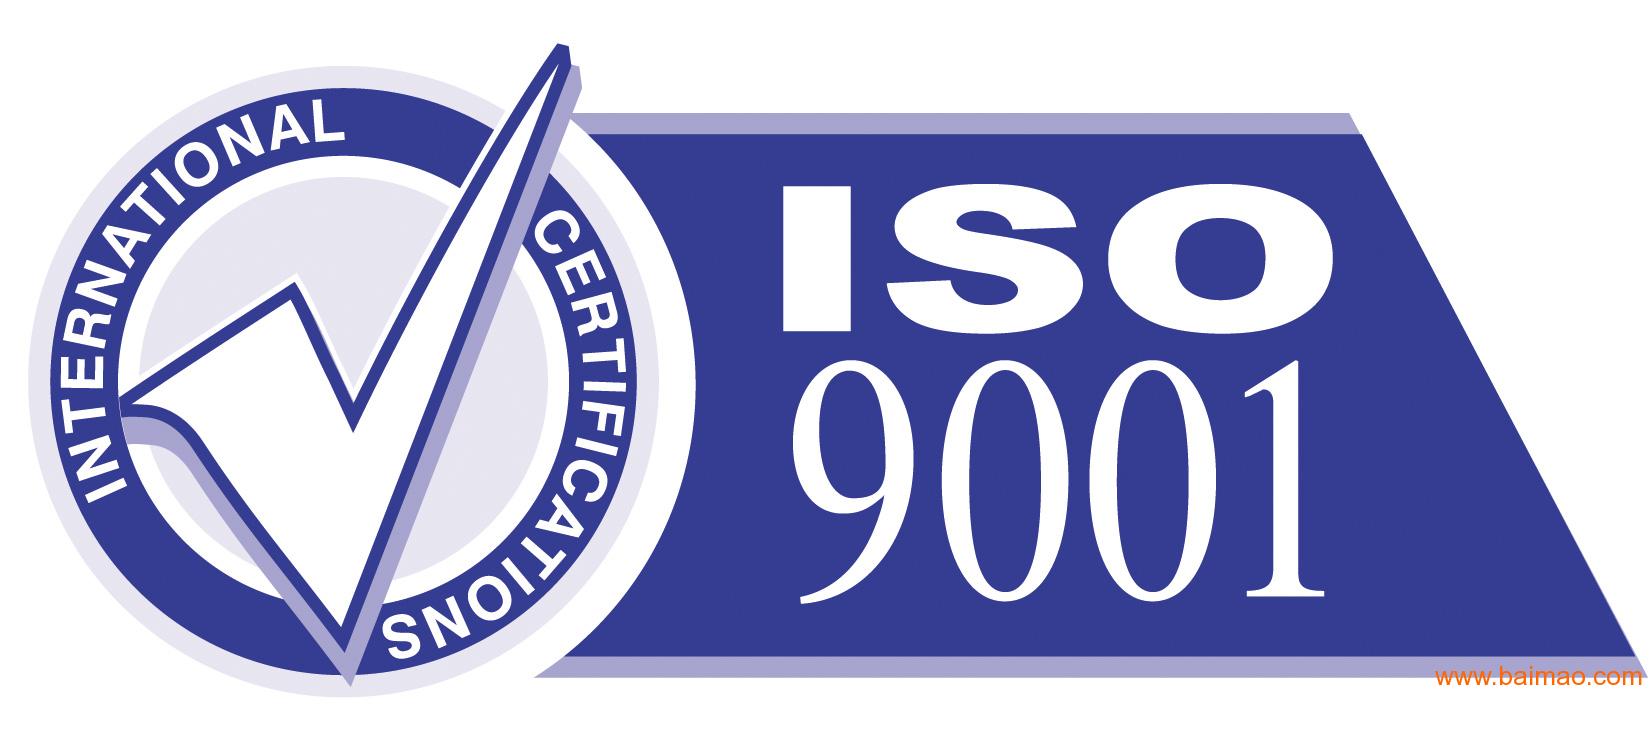 南海iso9001认证管理评审